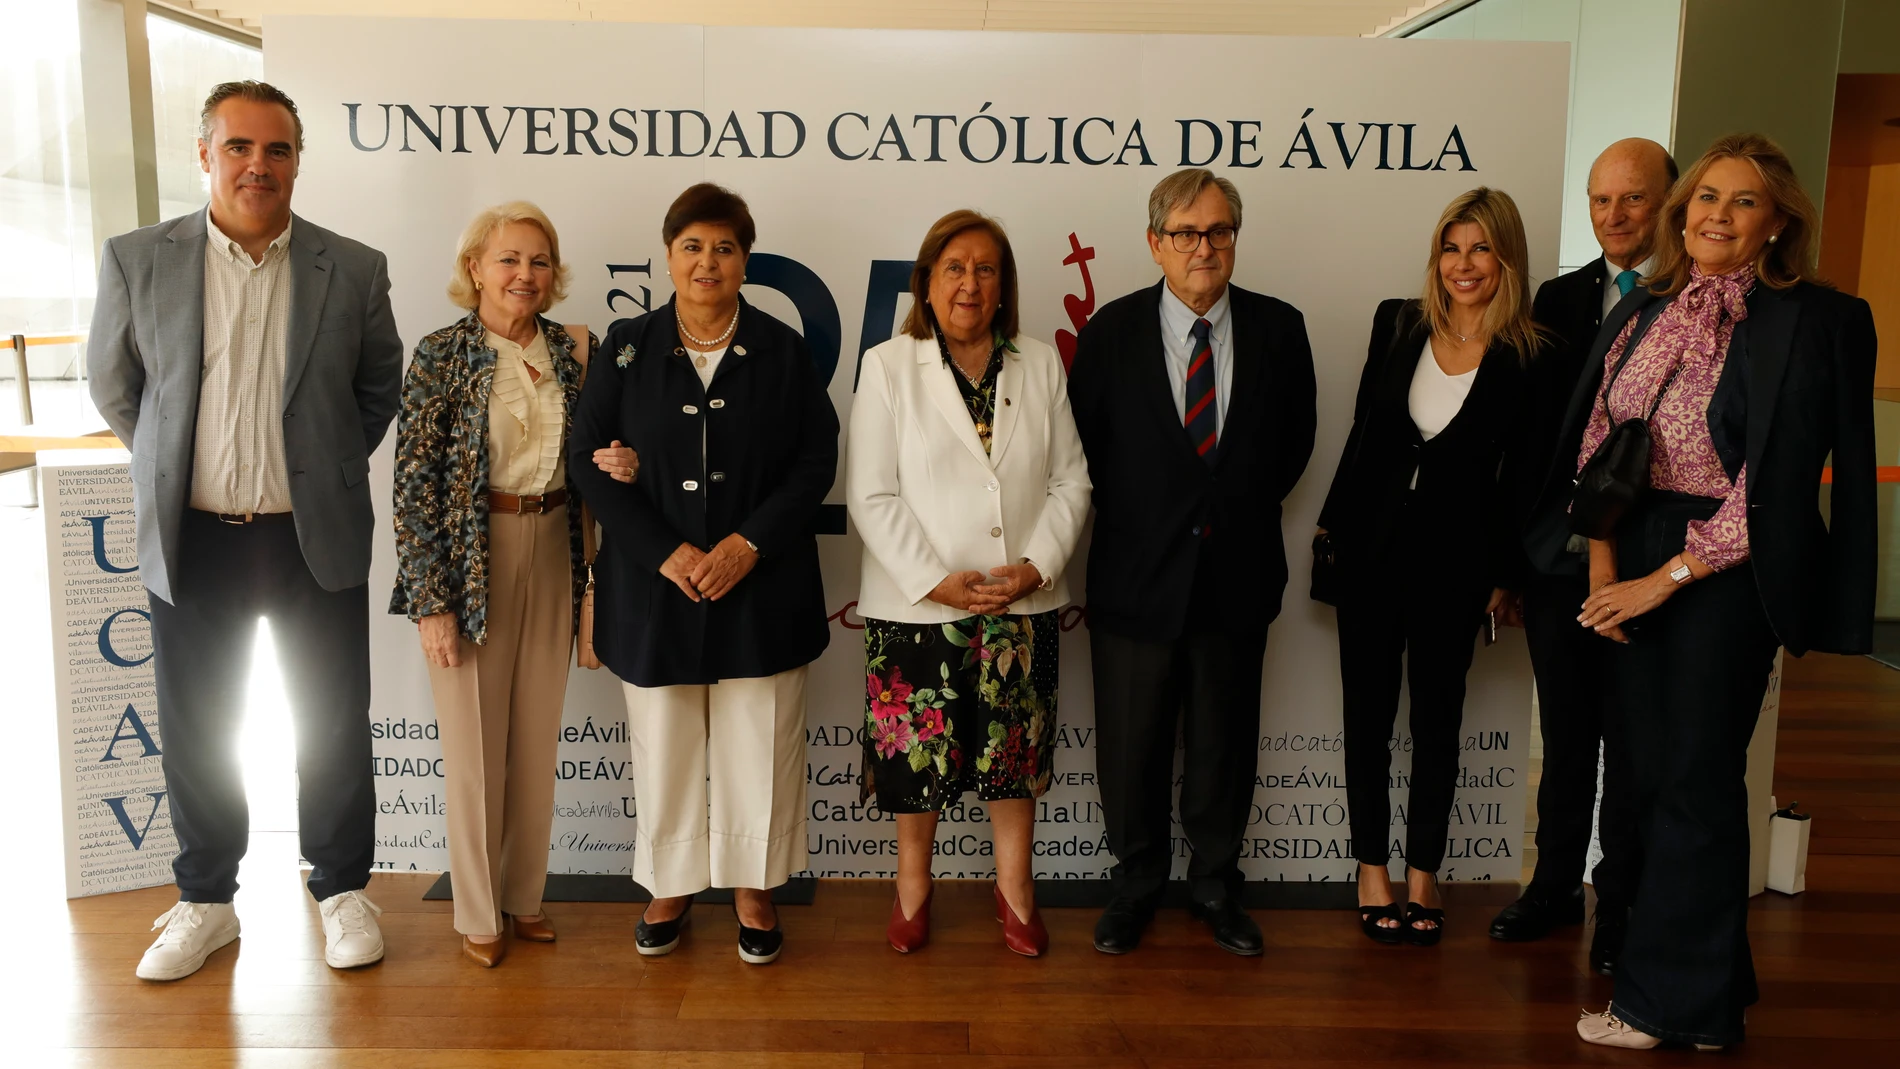 Raúl Mata, María Josefa Guerrero, María del Rosario Sáez Yuguero, Lydia Jiménez, Francisco Marhuenda, Rosa Díaz, Antonio Fernández de Buján y Reyes Luengo